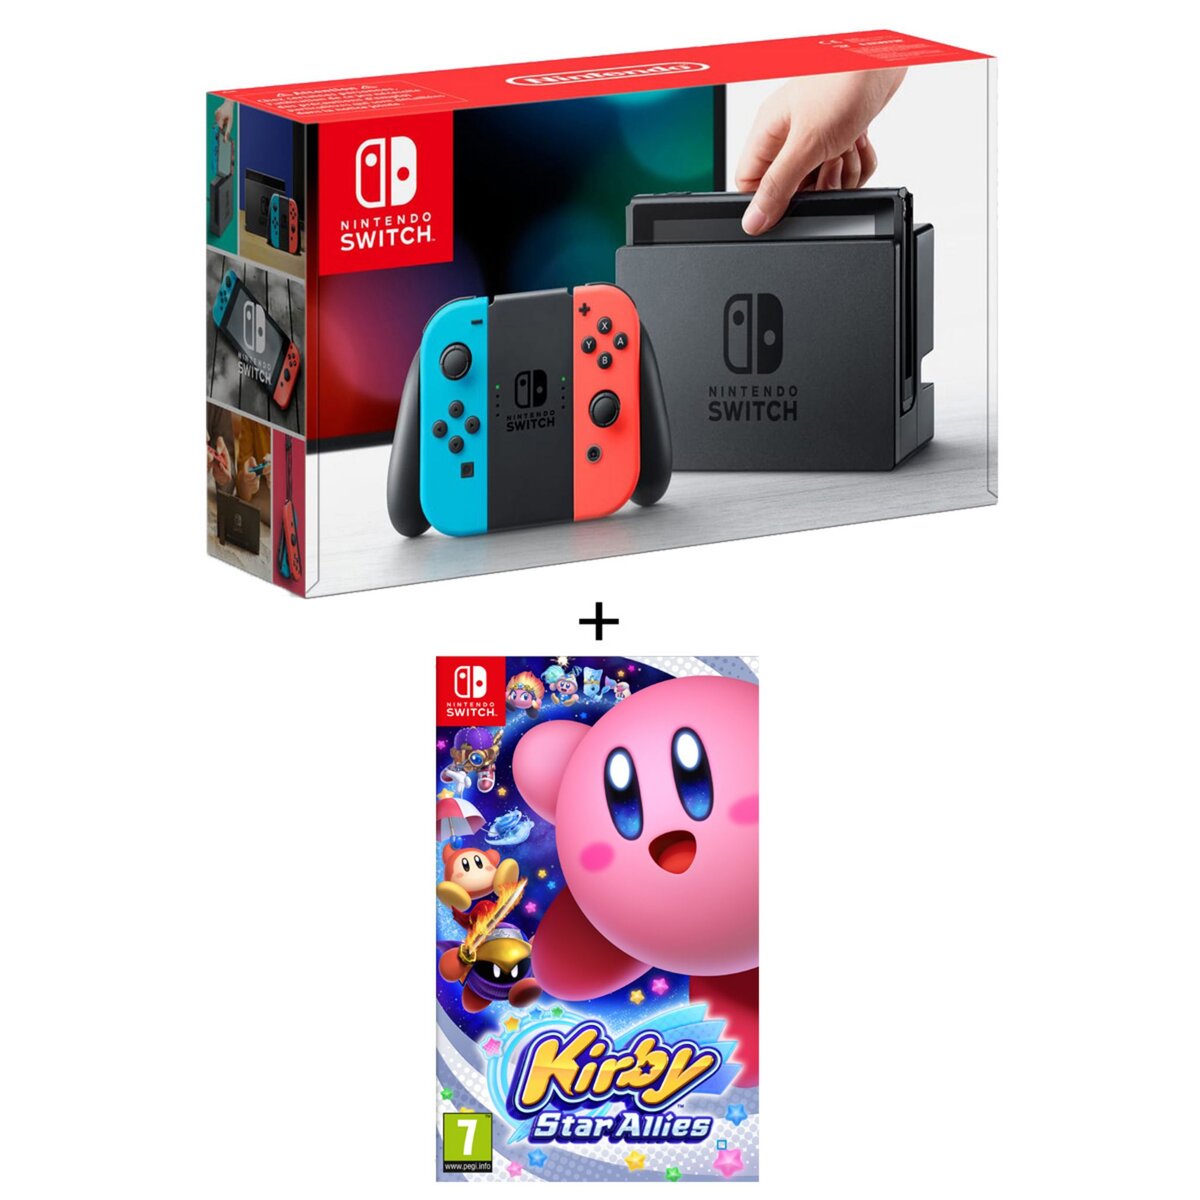 EXCLU WEB Console Nintendo switch 2 Joy-Con Néon + Kirby Star Allies